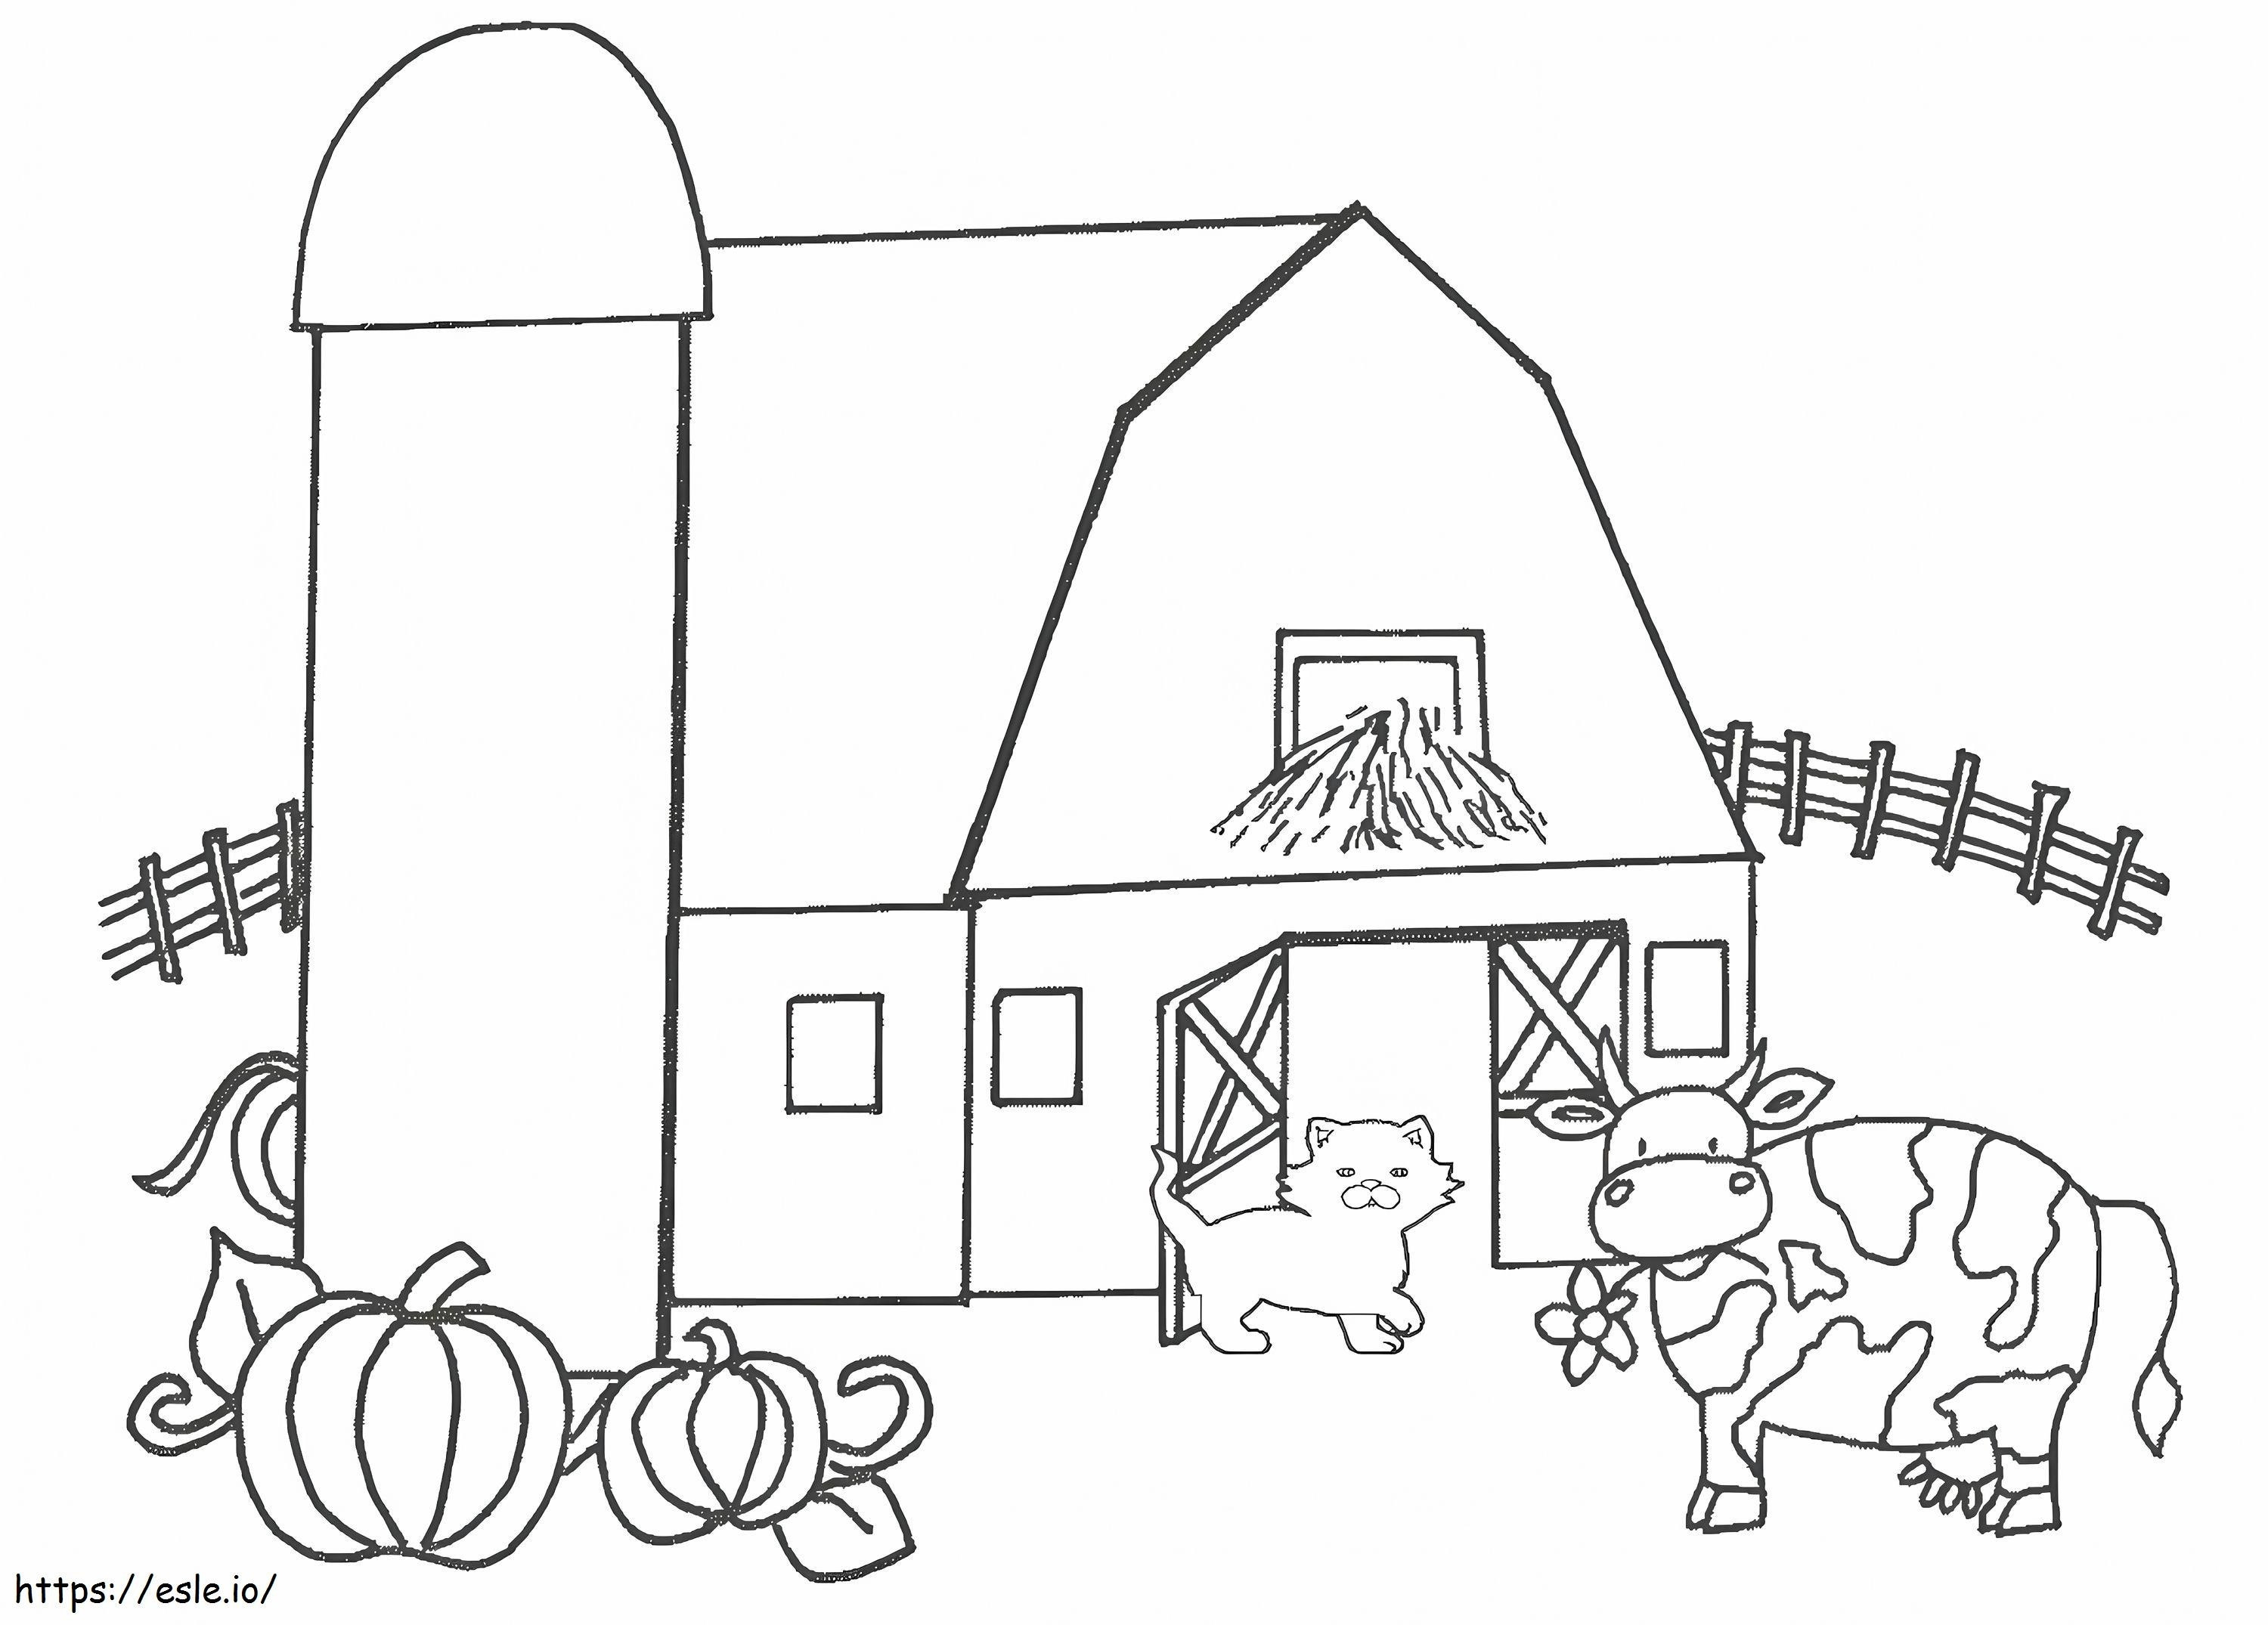 Katze und Kuh auf einem Bauernhof ausmalbilder